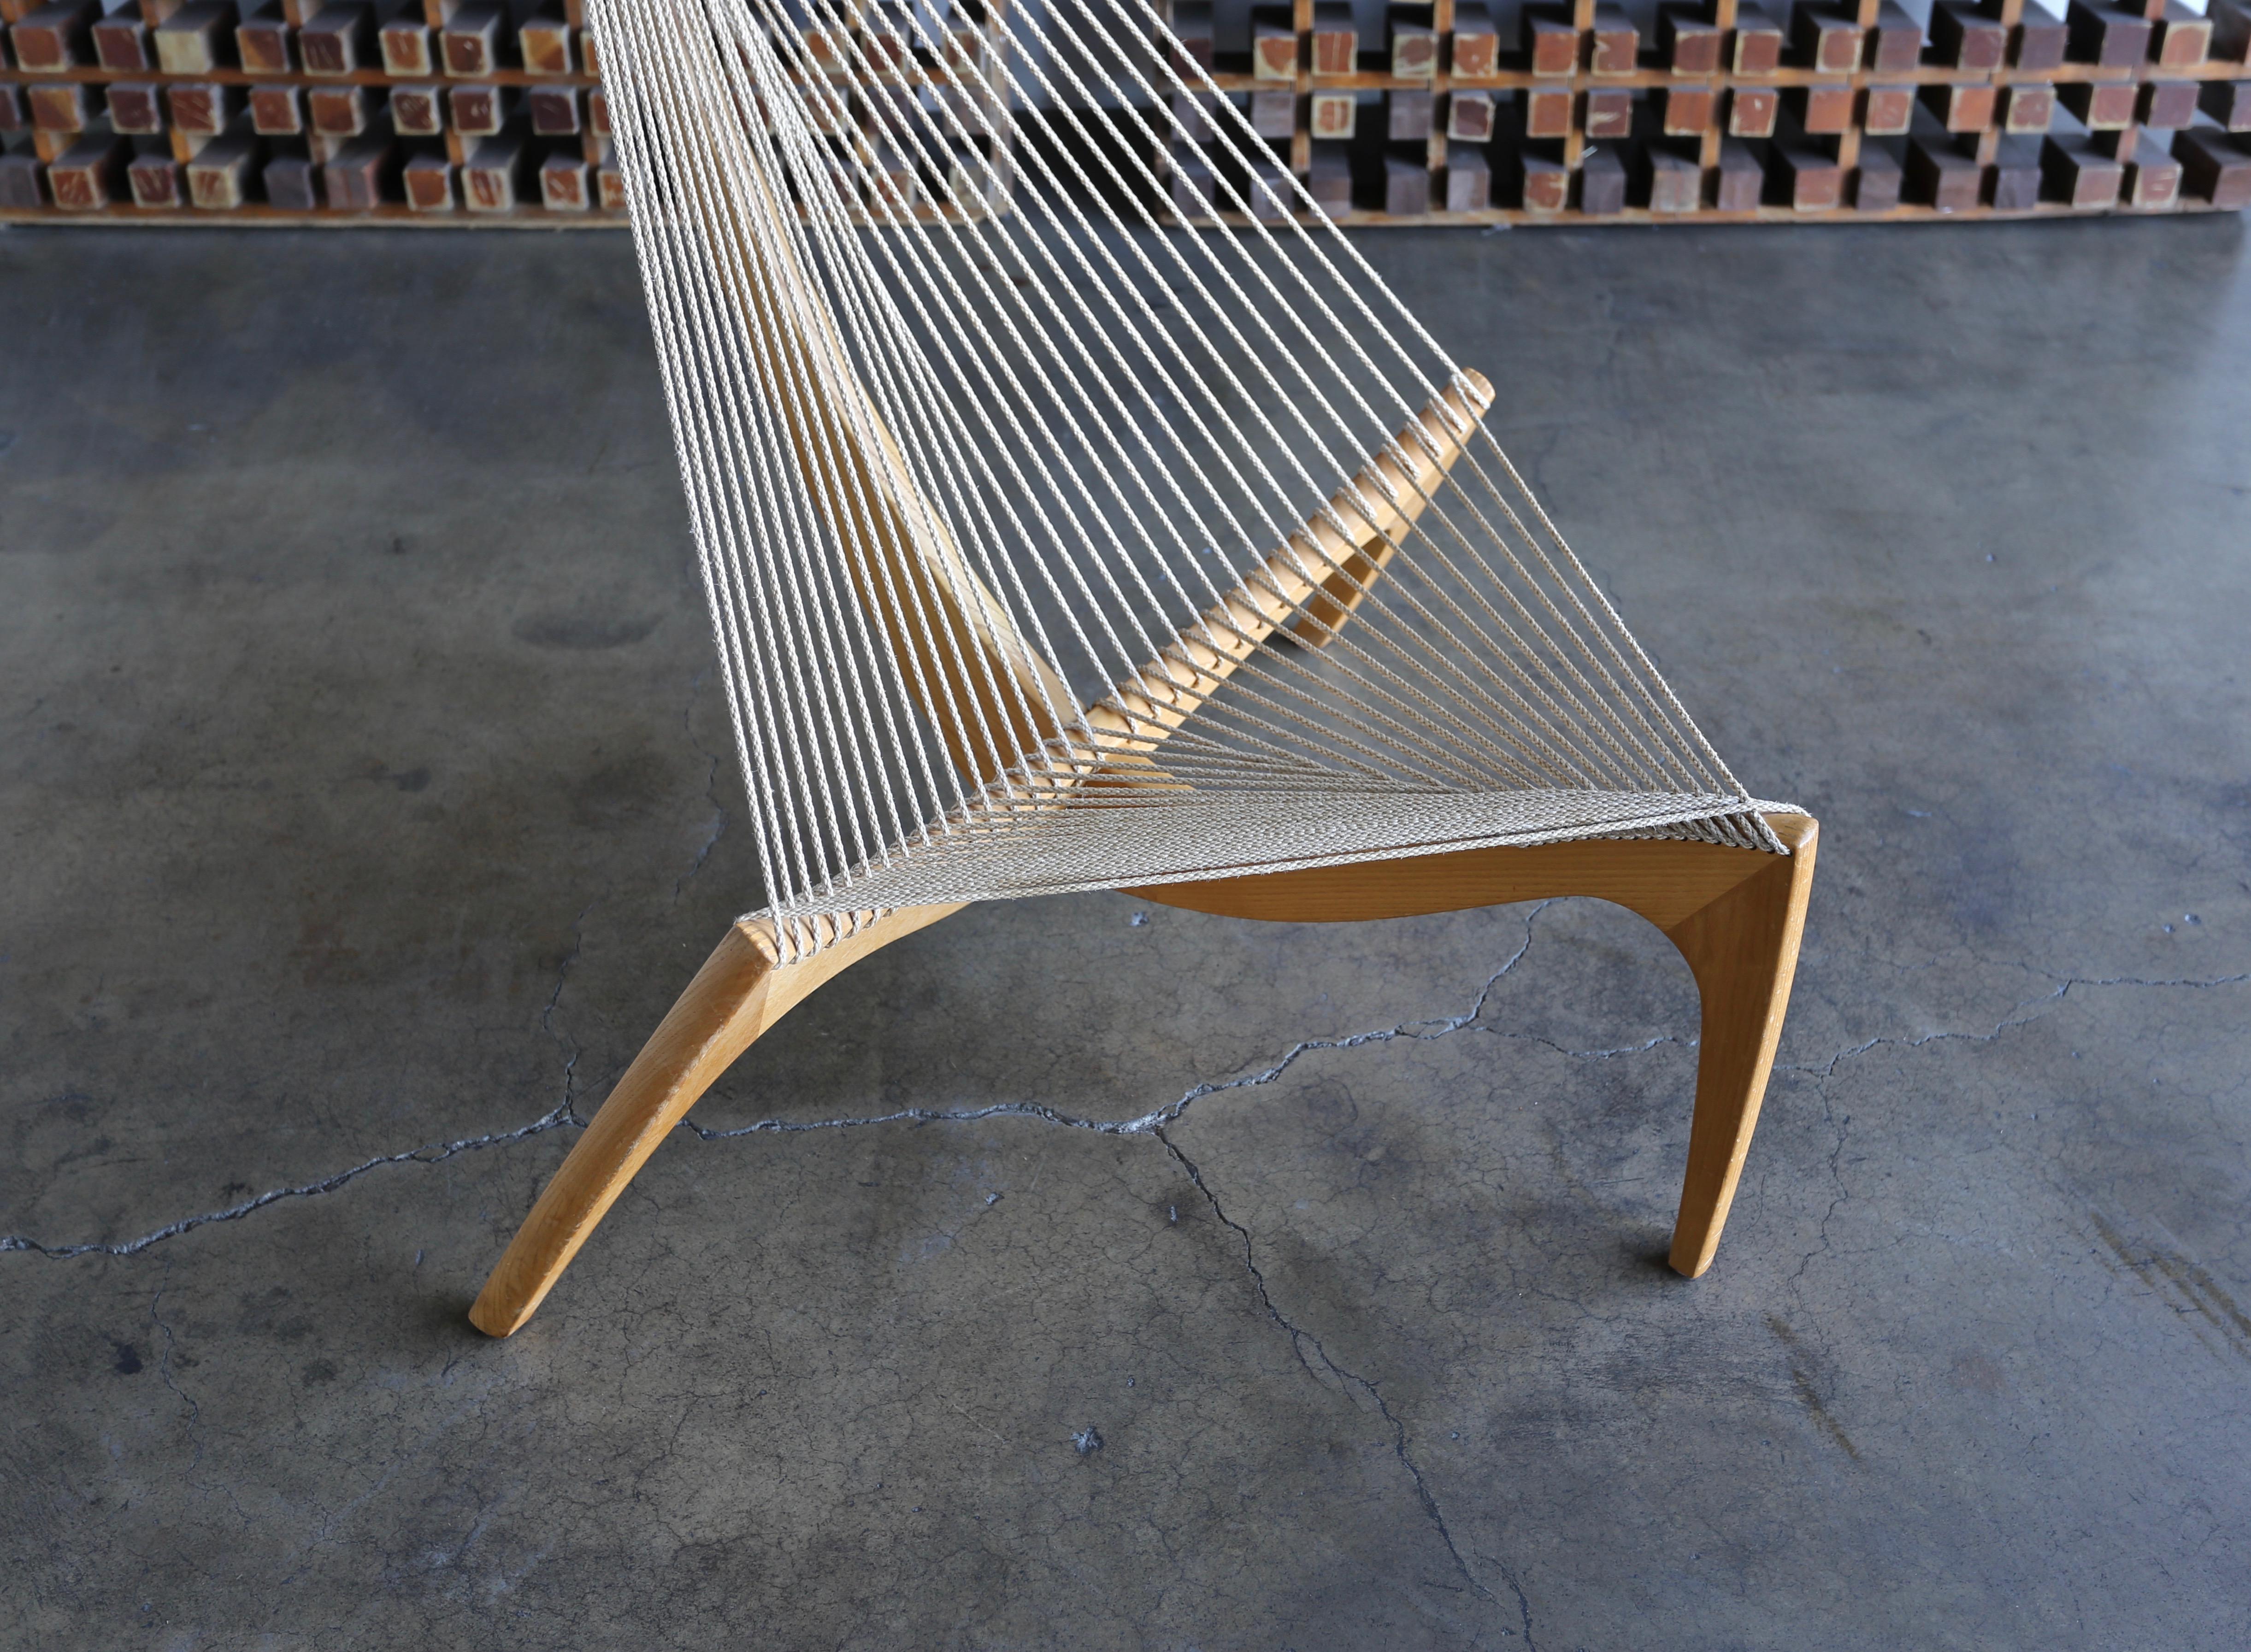 “The Harp Chair” by Jørgen Høvelskov for Jørgen Christensen.